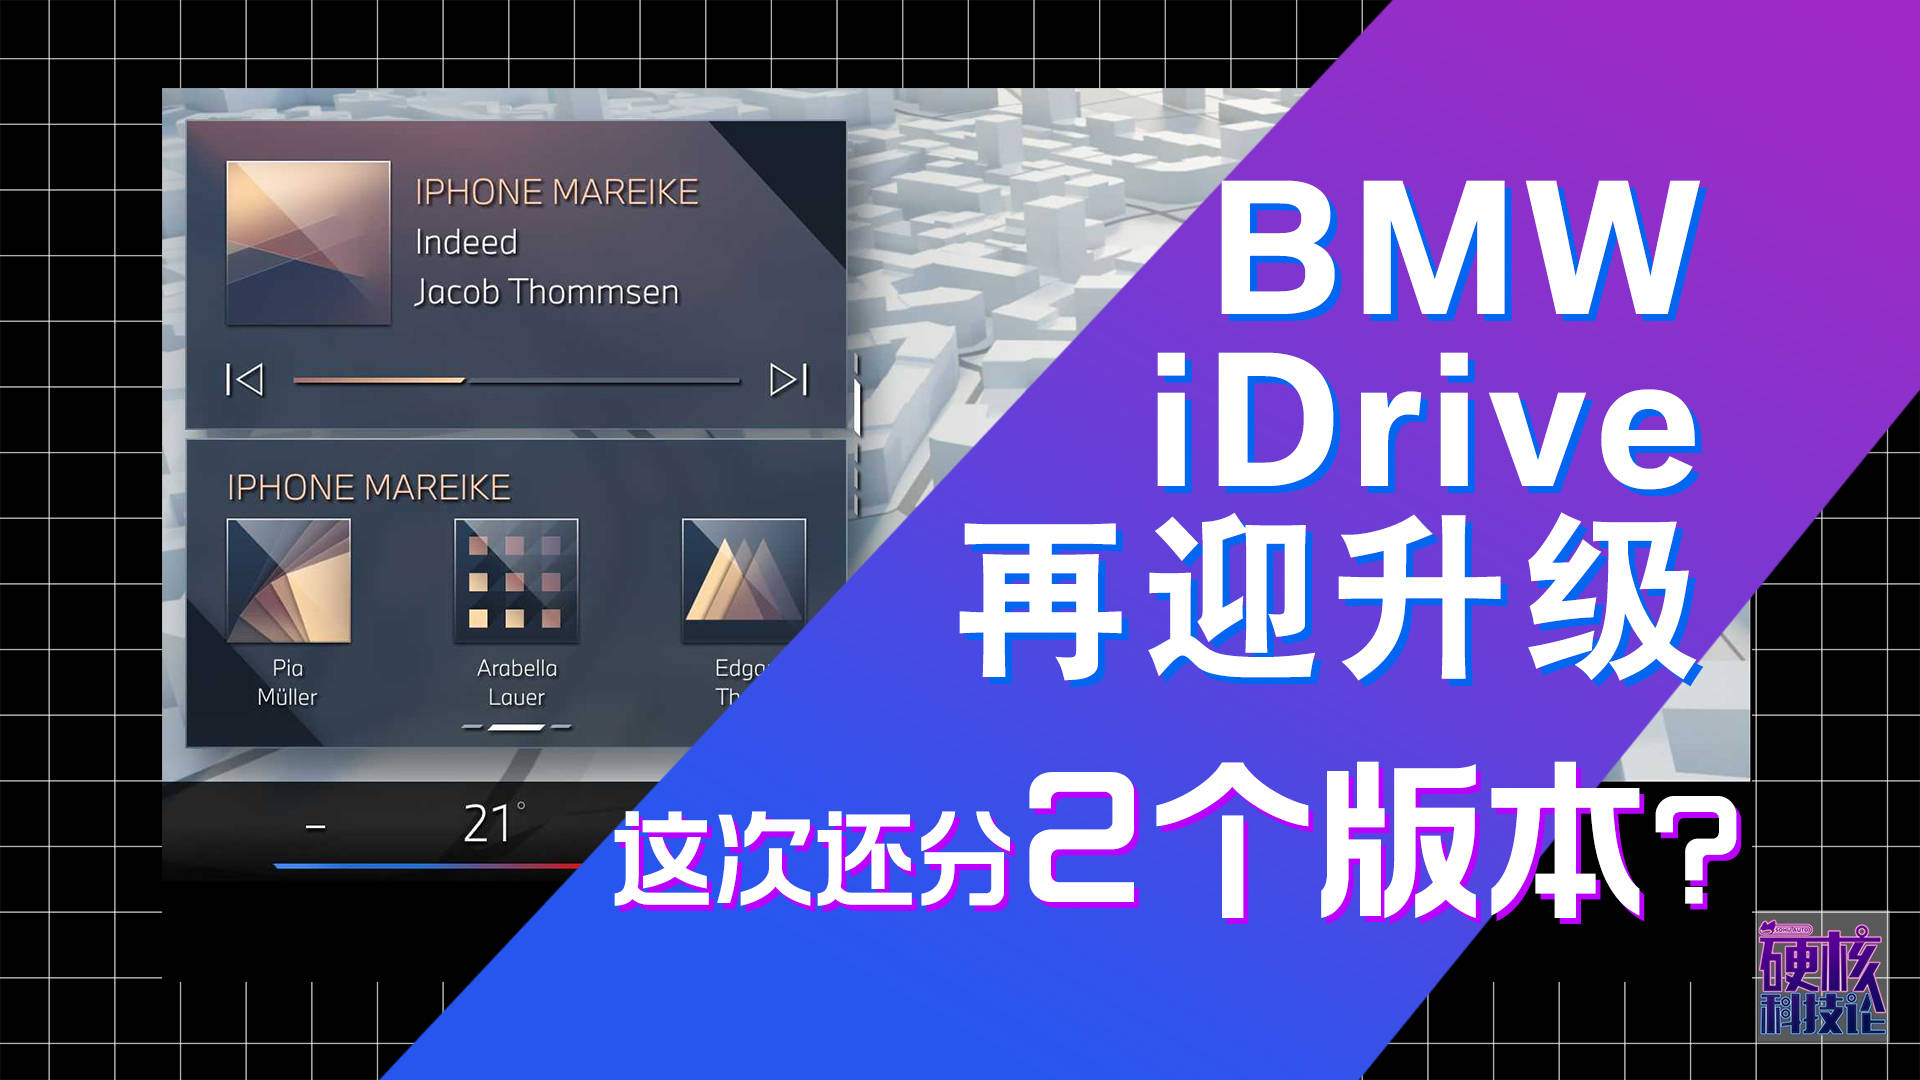 修真天下苹果版
:硬核科技论【Vol.25】 宝马iDrive再迎升级 这次还分2个版本？